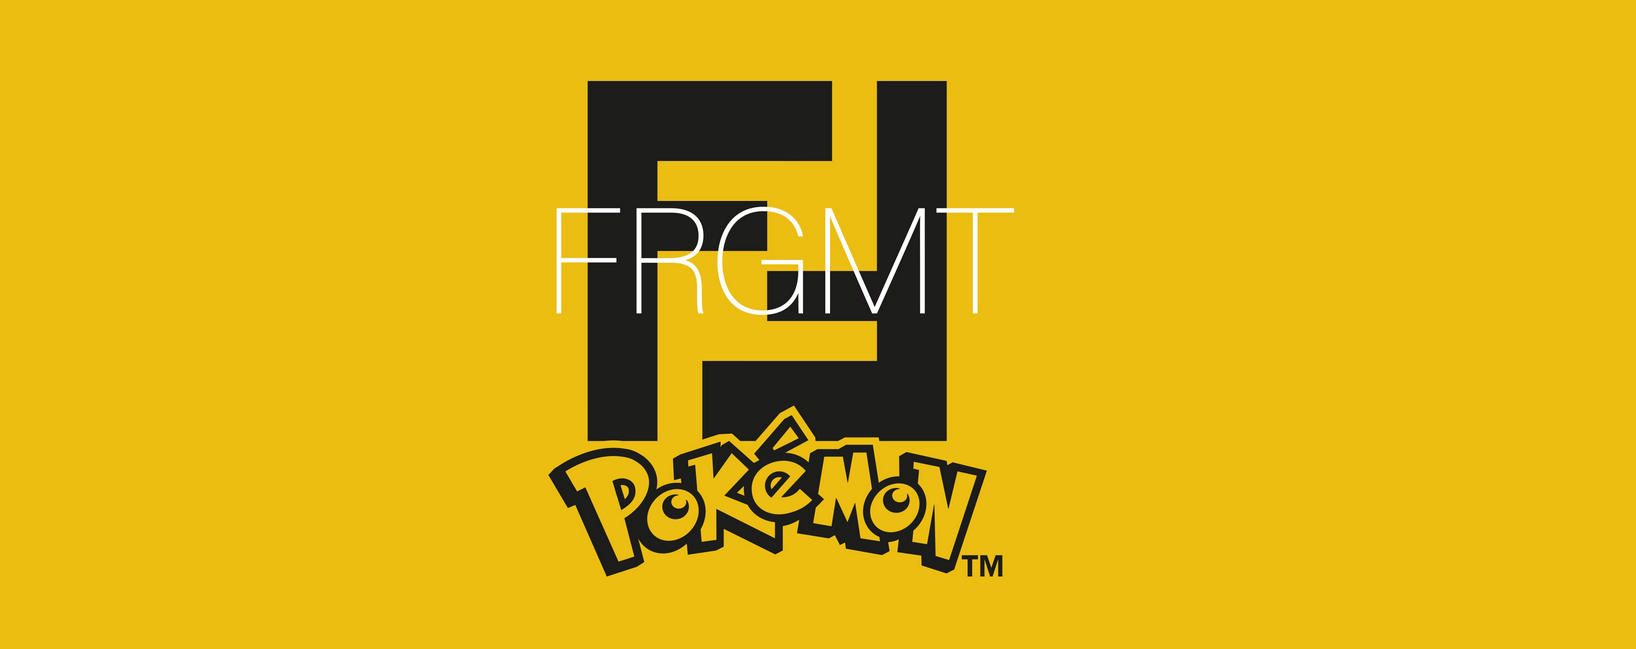 Pokémon's Dragonite Pops Up at Selfridges for Fendi, Frgmt